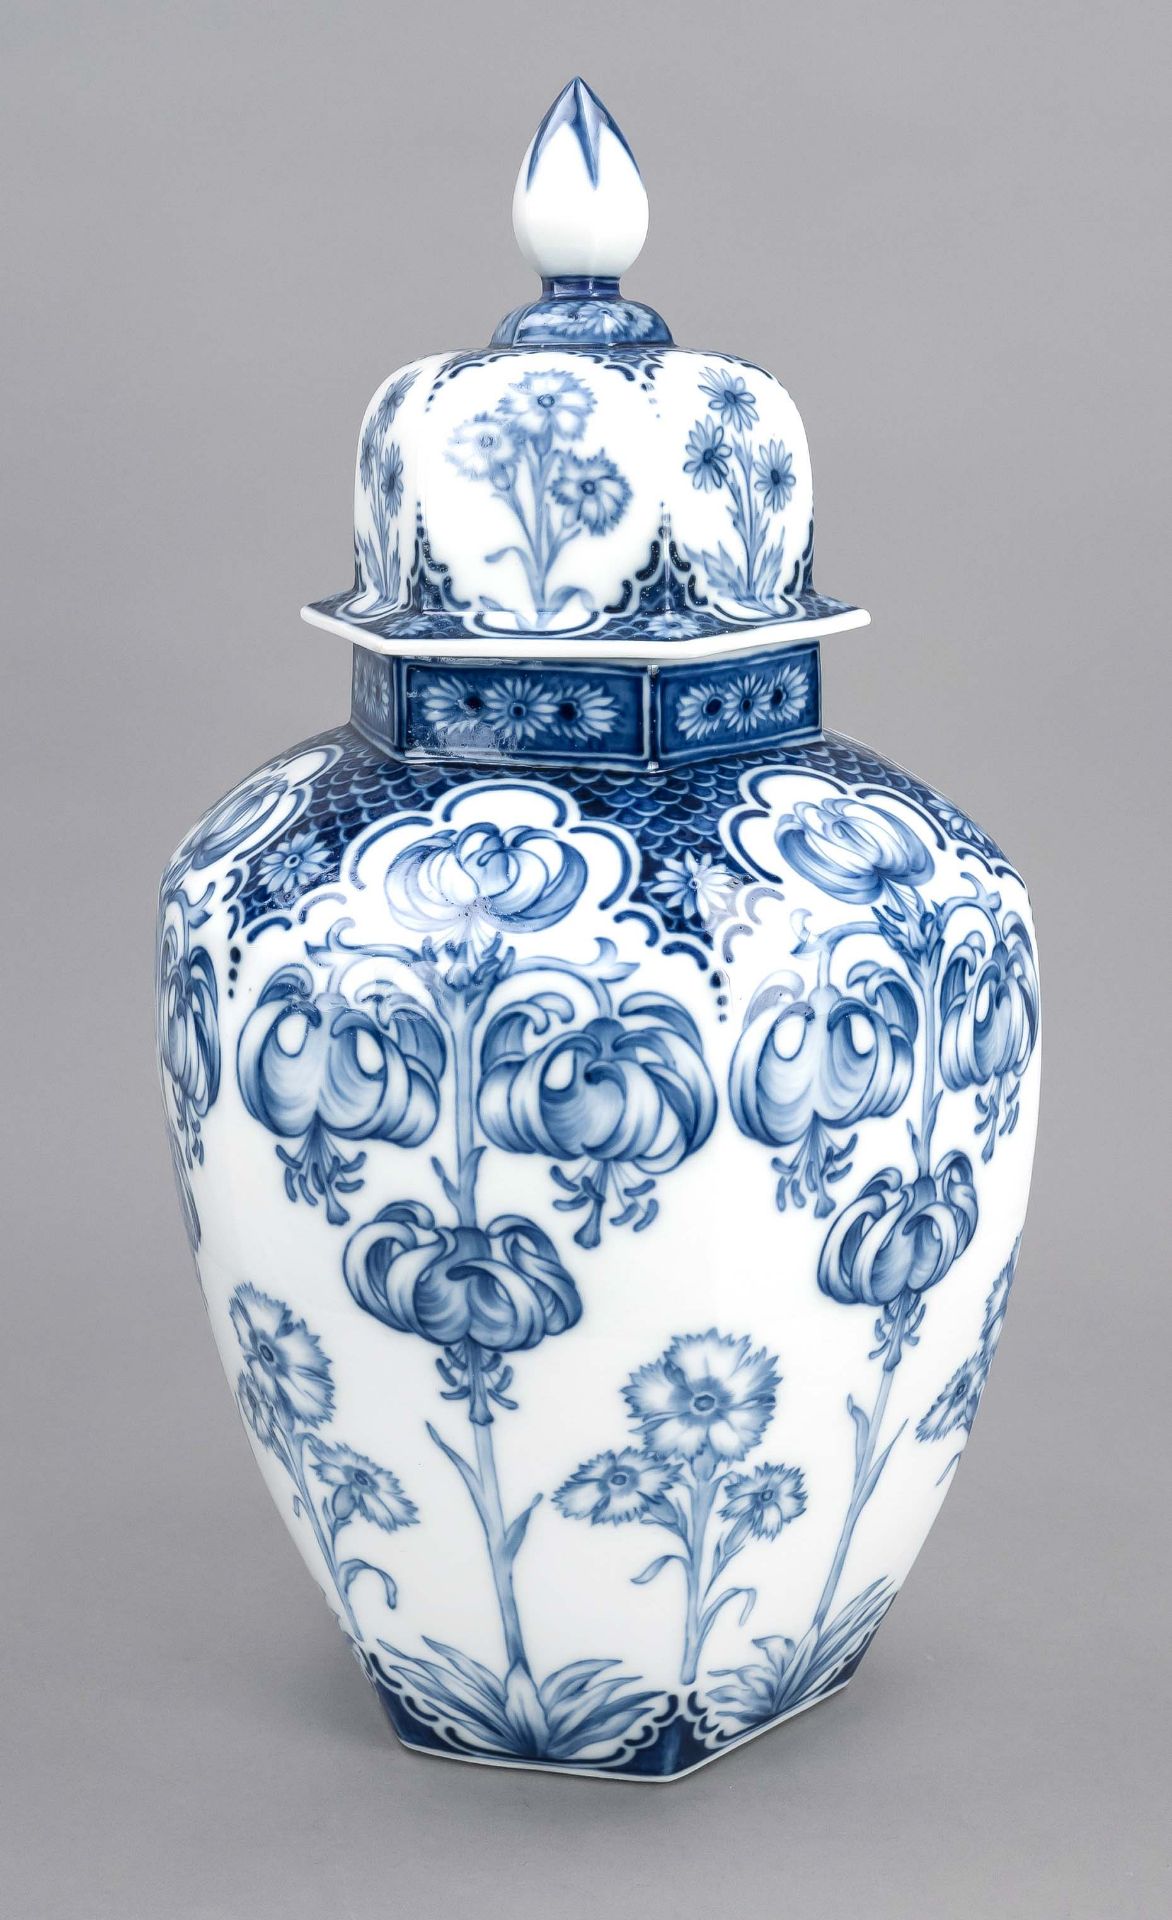 Lidded vase, Meissen, Knaufschwerter mark 1850-1924, 2nd choice, hexagonal lidded vase, painted